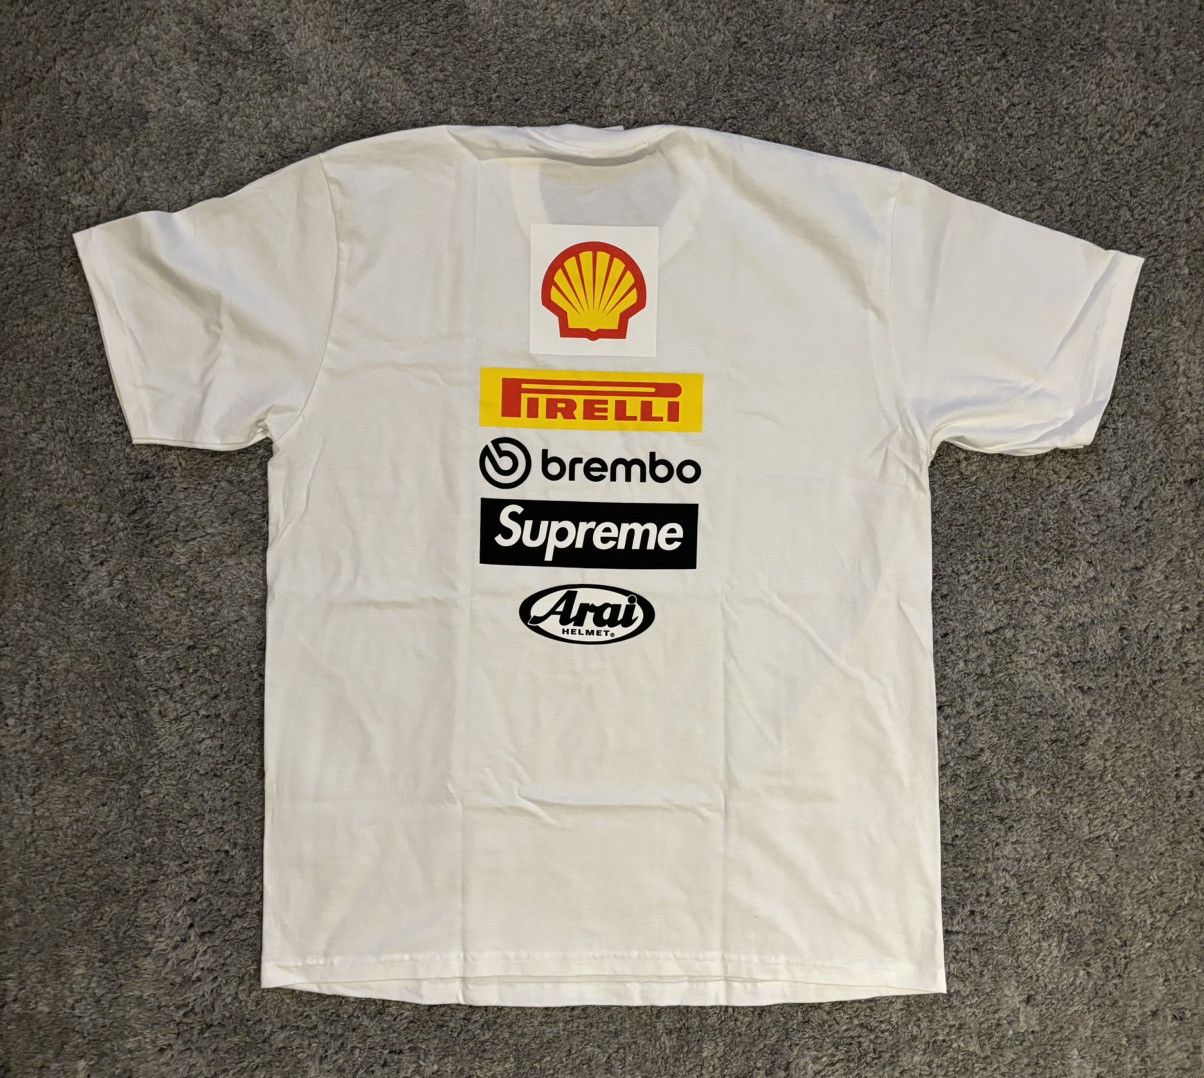 Supreme Supreme x Ducati logo tee | Grailed